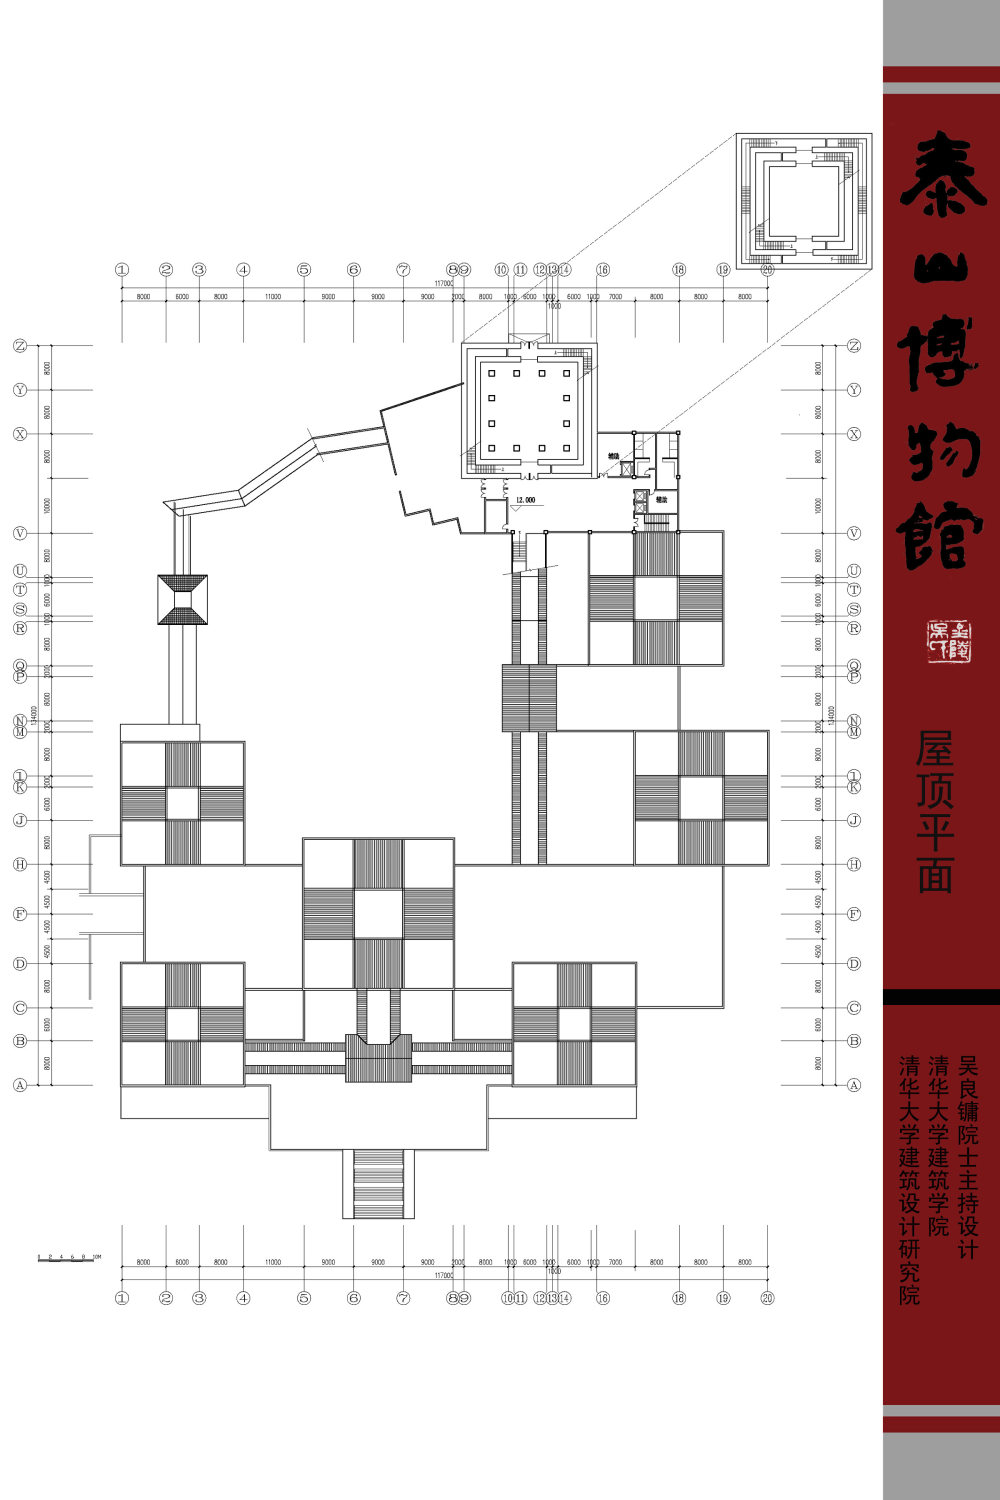 泰山博物馆规划设计方案-建筑设计大师吴良镛_09-屋顶.jpg